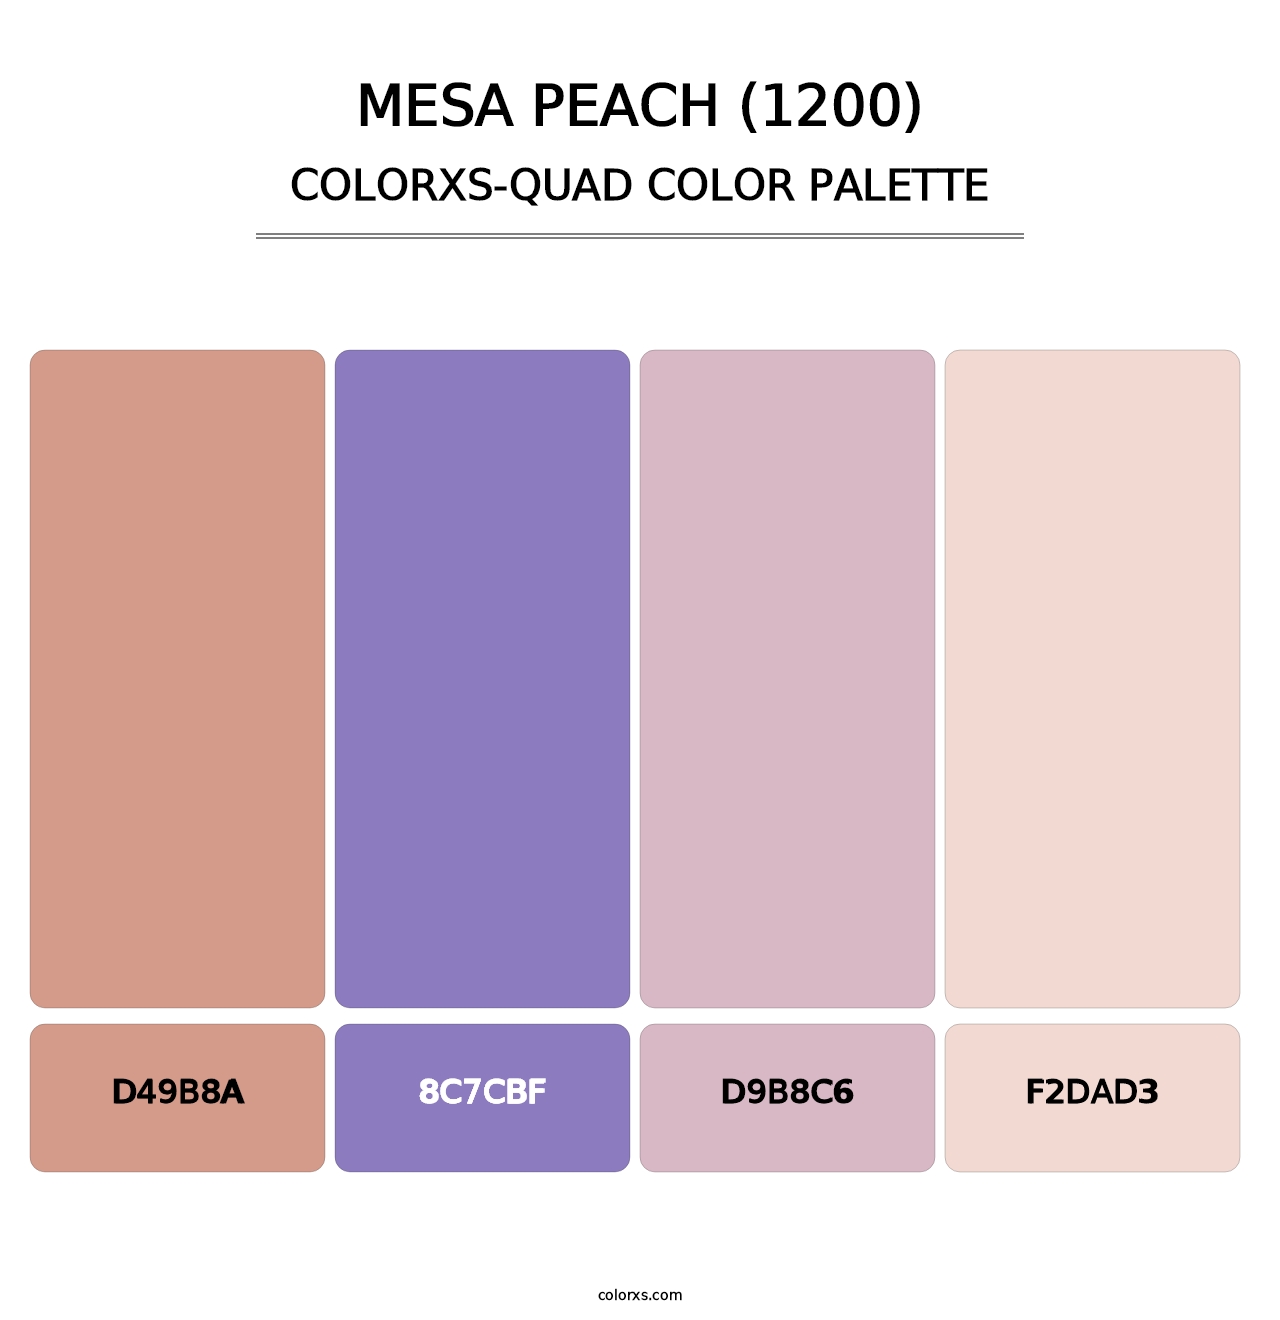 Mesa Peach (1200) - Colorxs Quad Palette